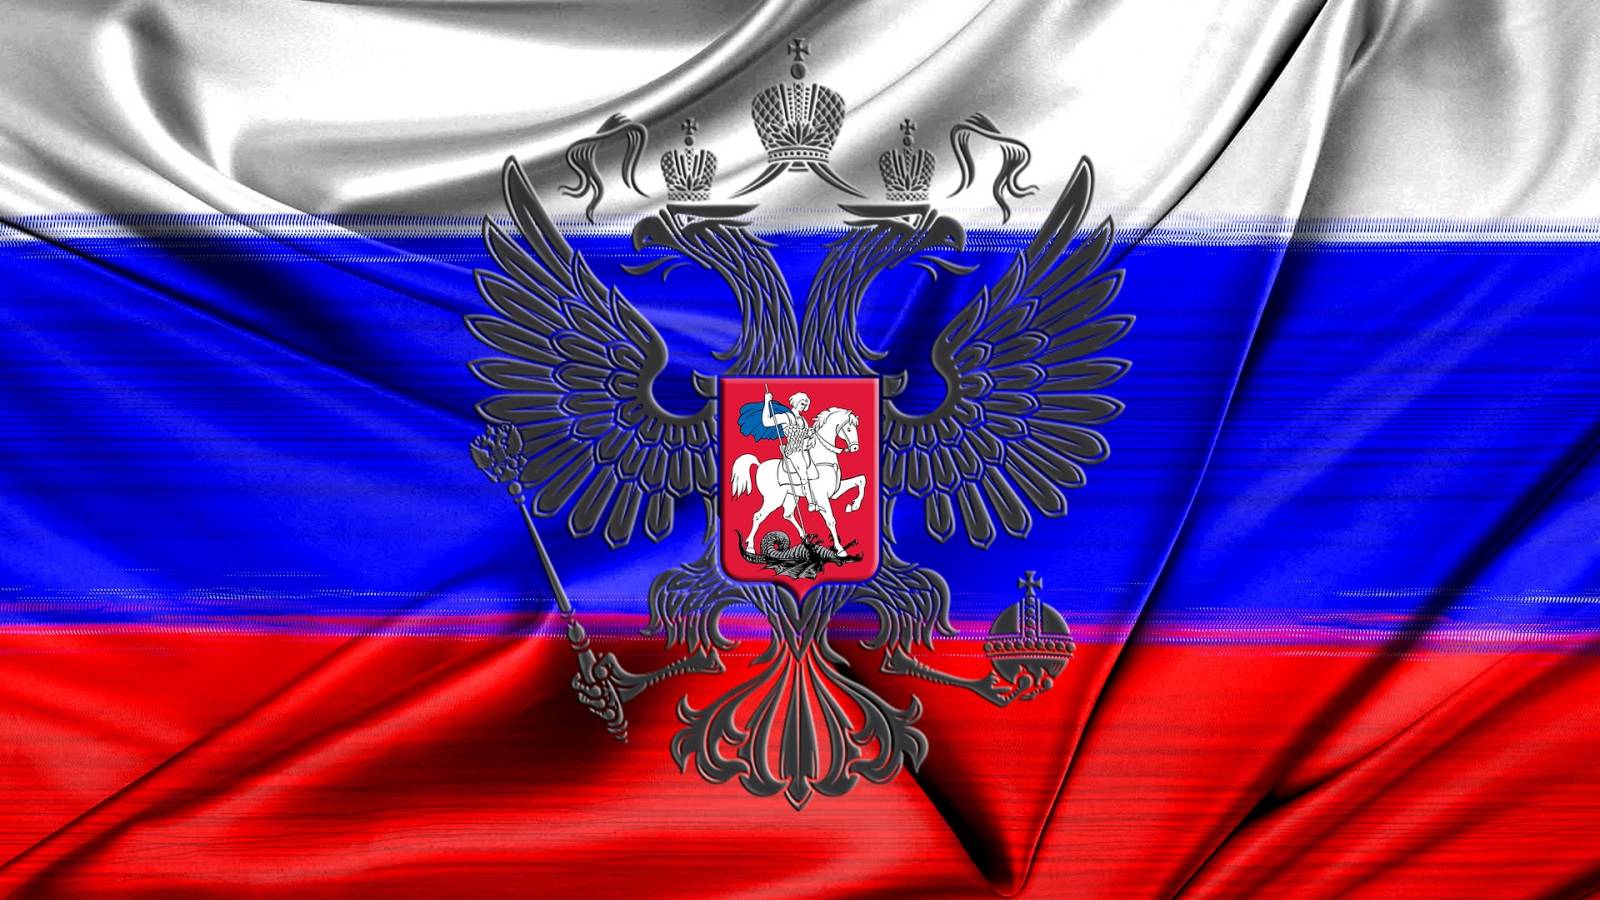 Rusland De zeer belangrijke beslissing genomen tijdens de volledige oorlog in Oekraïne